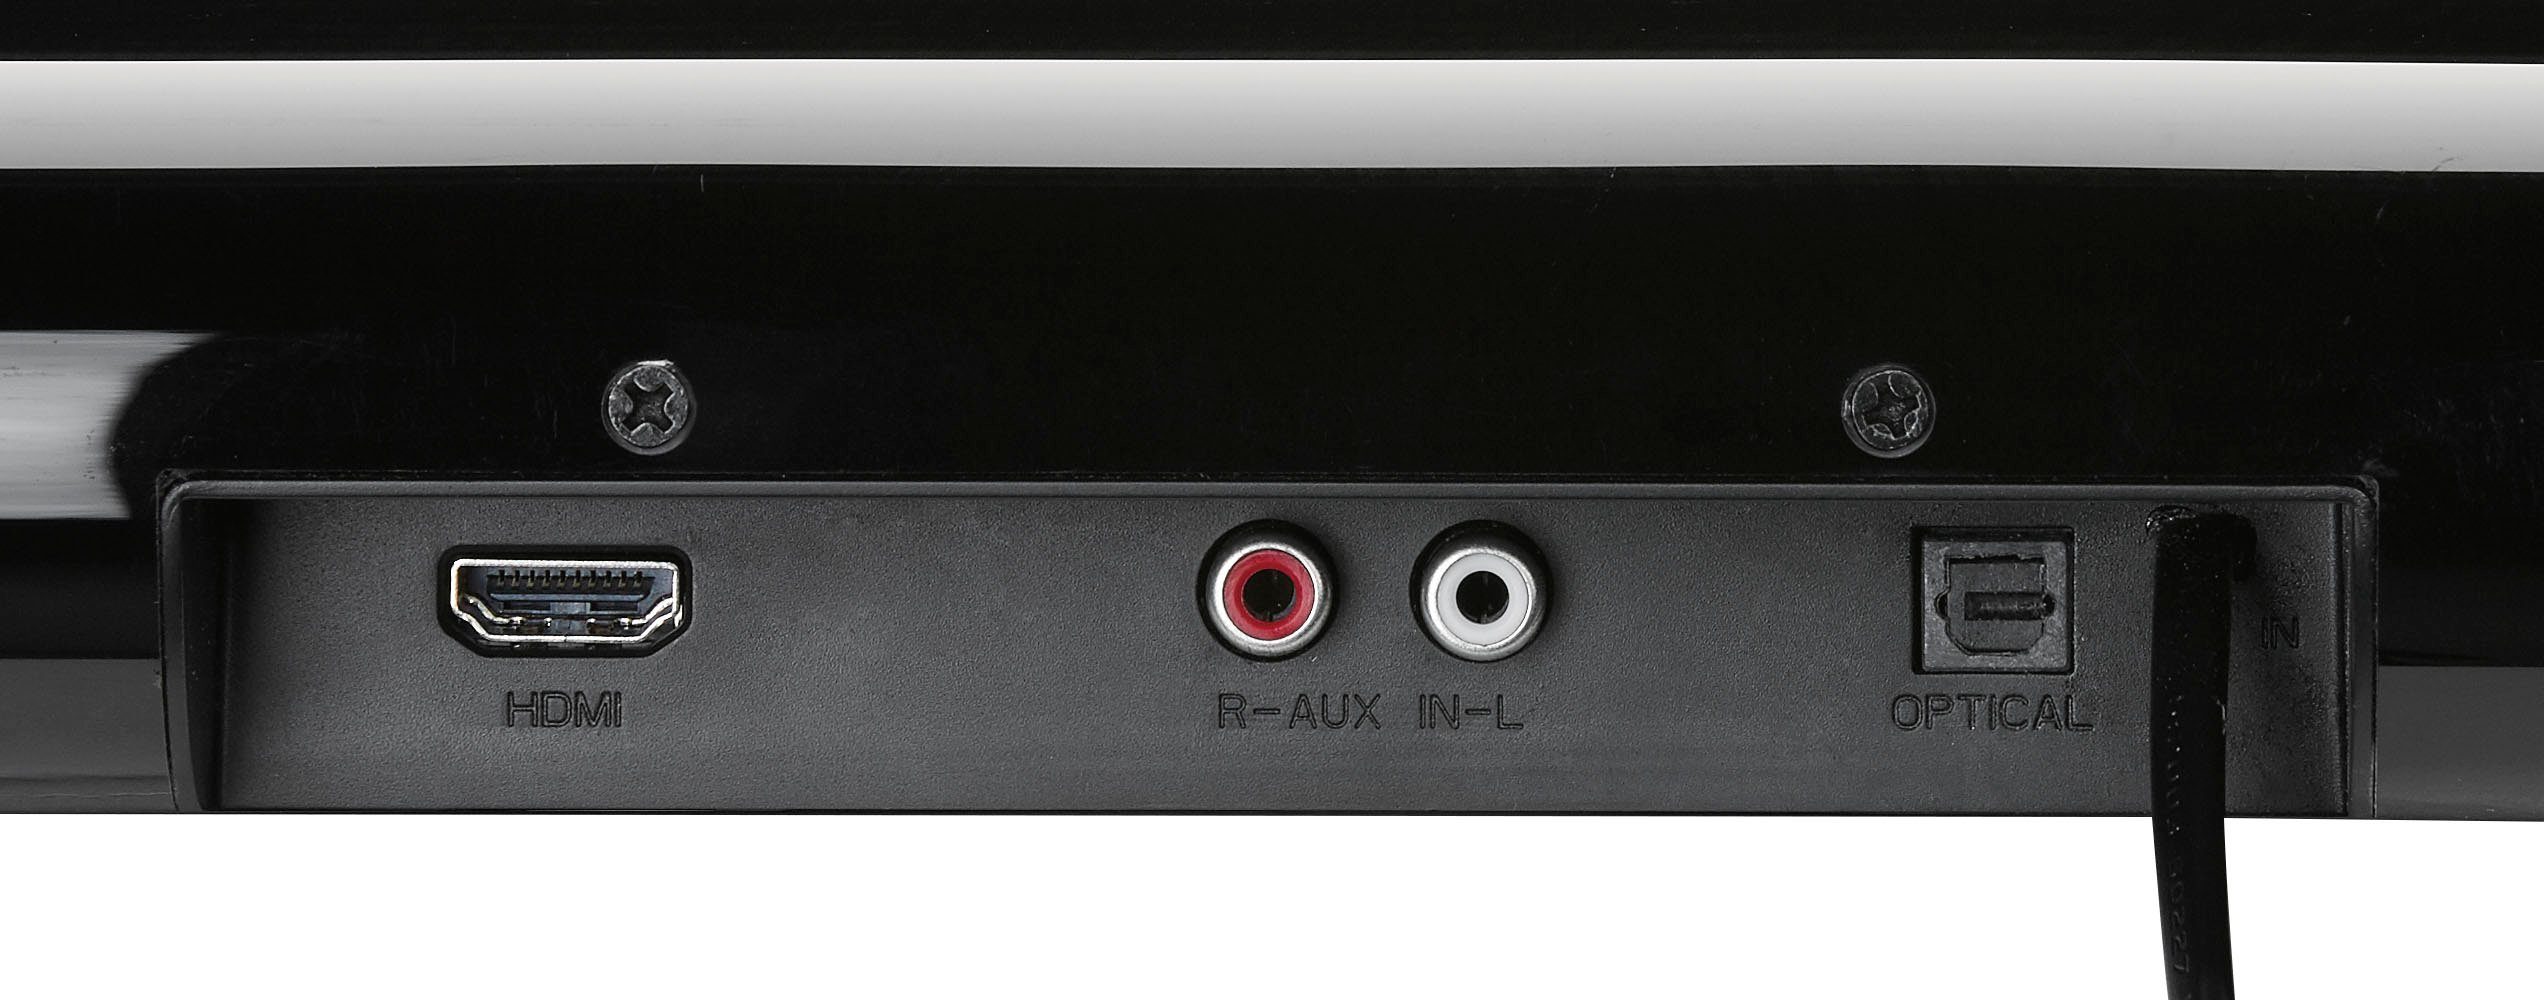 2.0 W) schwarz DSB 950 Grundig 40 Soundbar (Bluetooth,